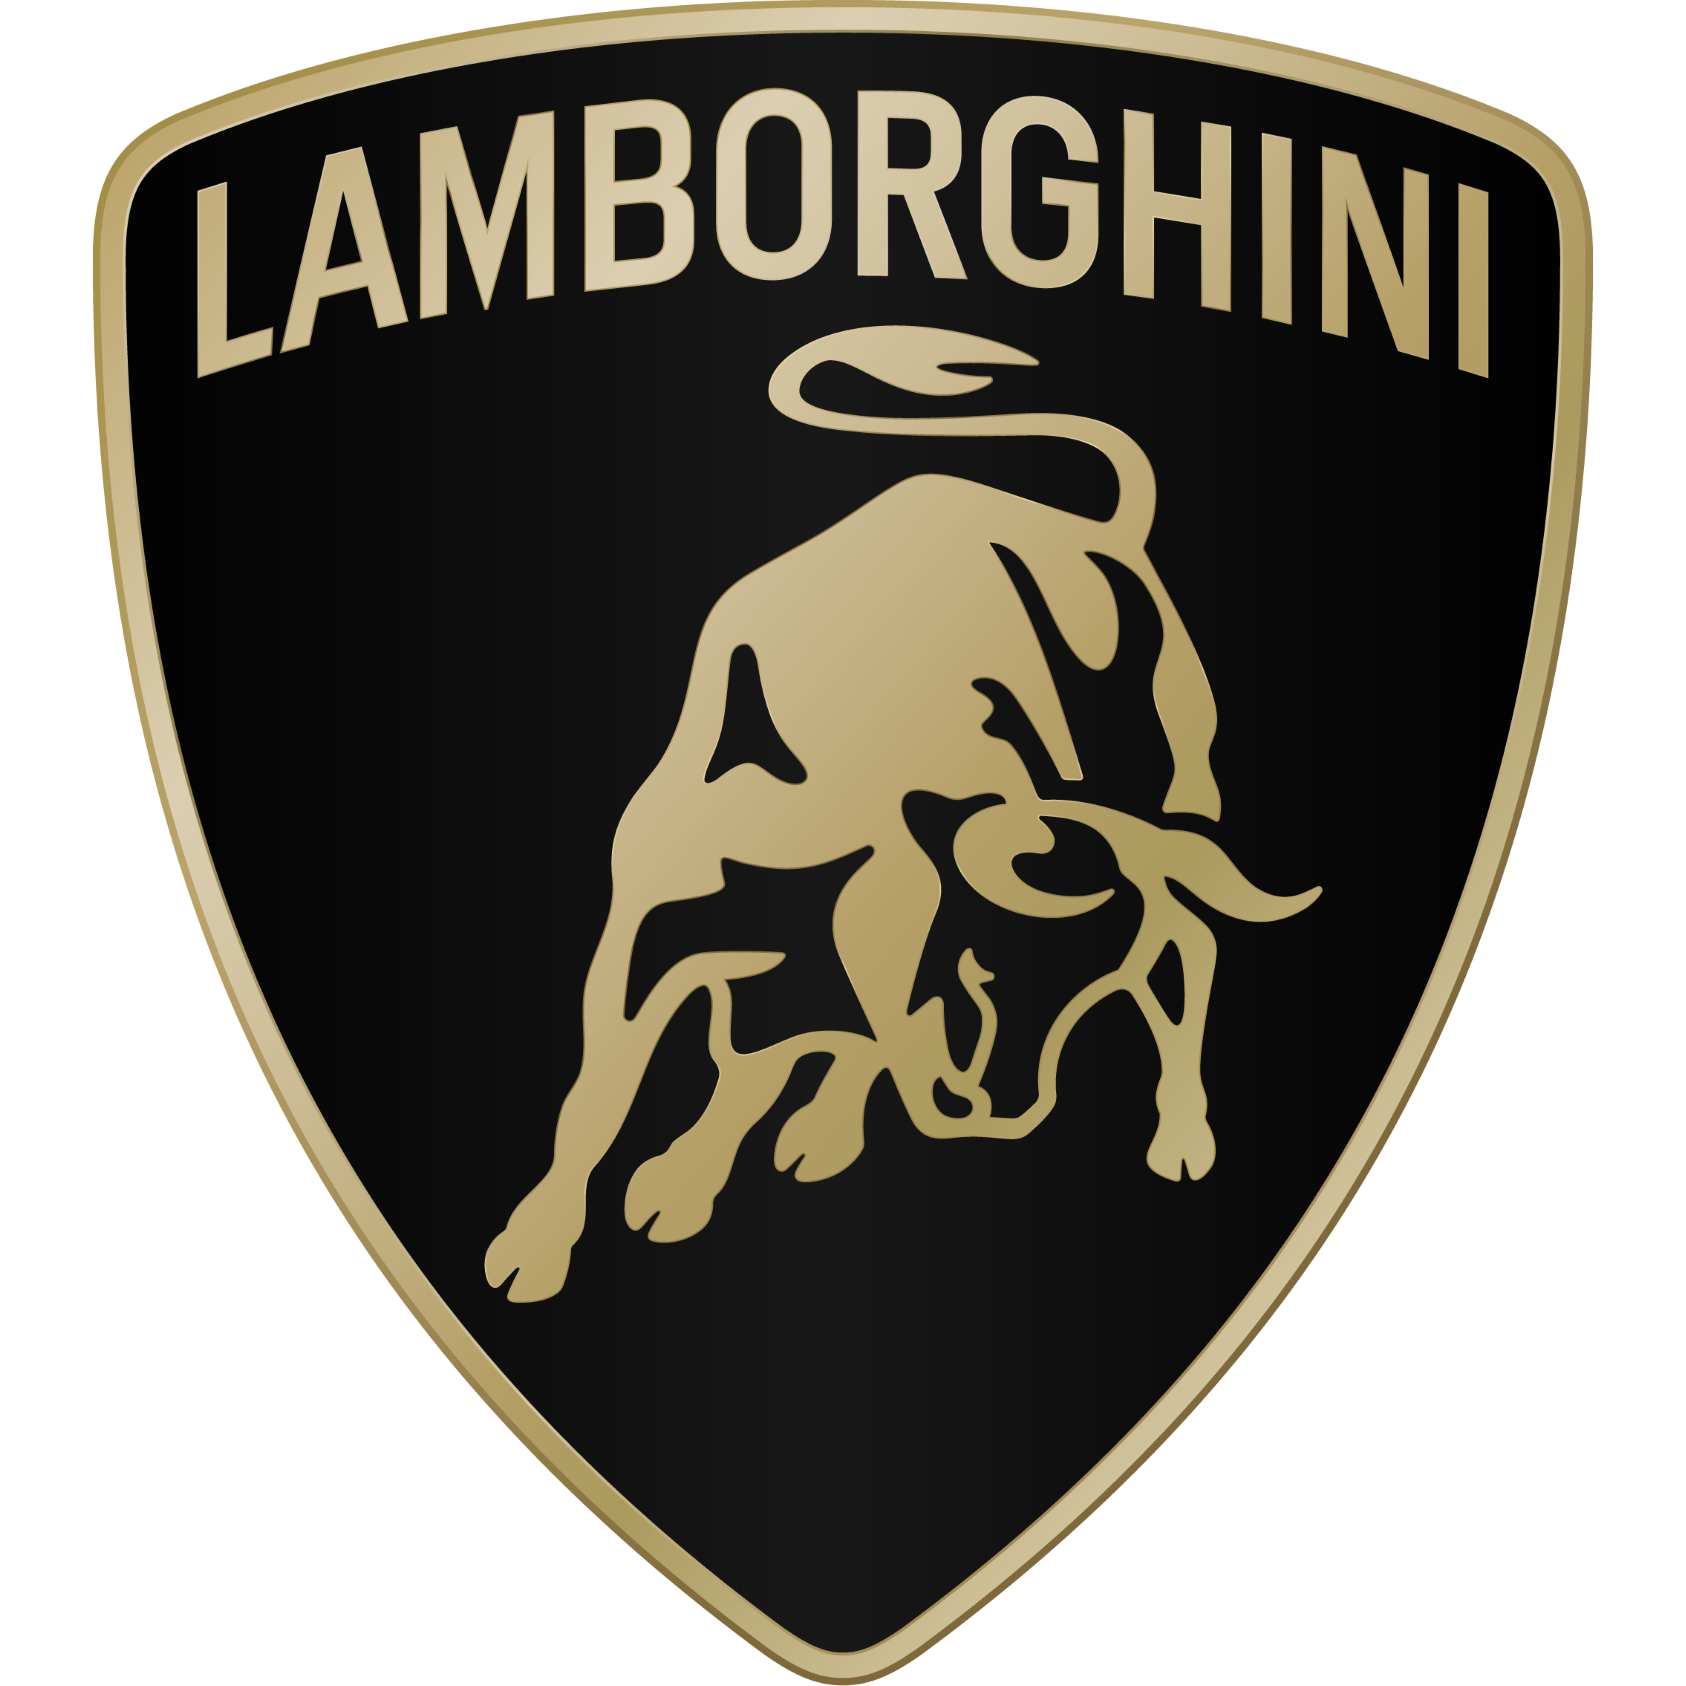 Lamborghini Leicester - Syston, Leicestershire LE7 1PF - 01162 601111 | ShowMeLocal.com